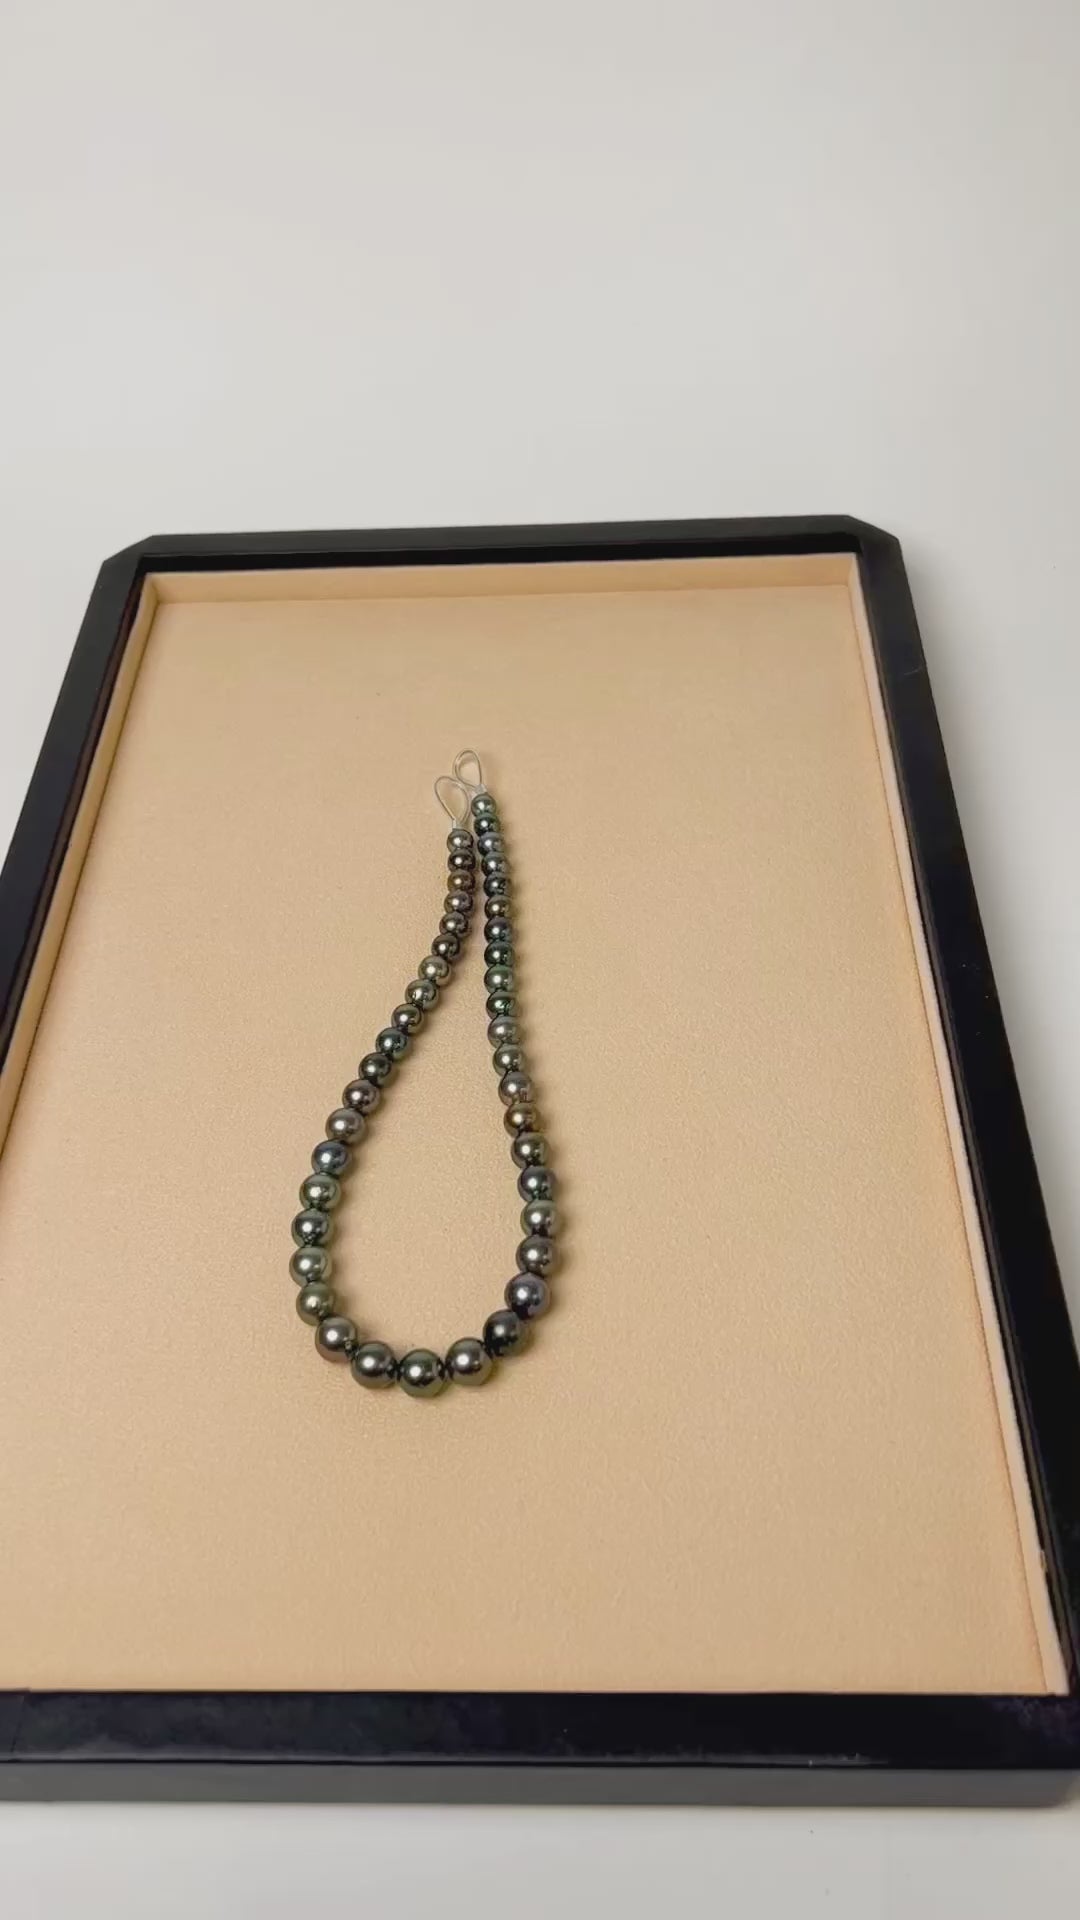 Collar de perlas cultivadas naturales Tahití redondas de 8,5 a 11,2 mm de colores verdoso, gris y bronce.